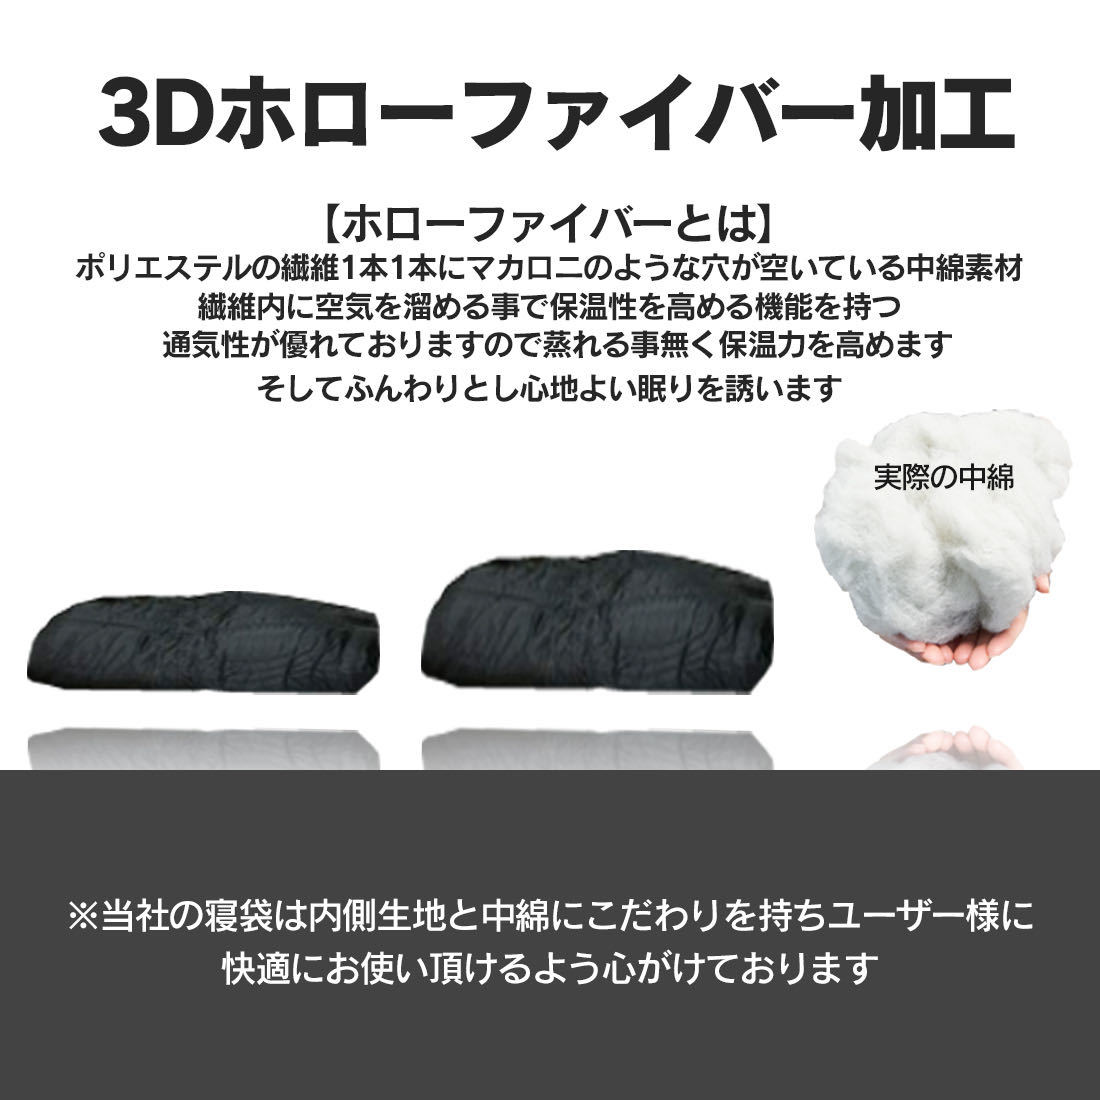 新品未使用寝袋ブラック-7℃封筒型シュラフスリーピングバッグ黒キャンプグランピング用寝具の画像6